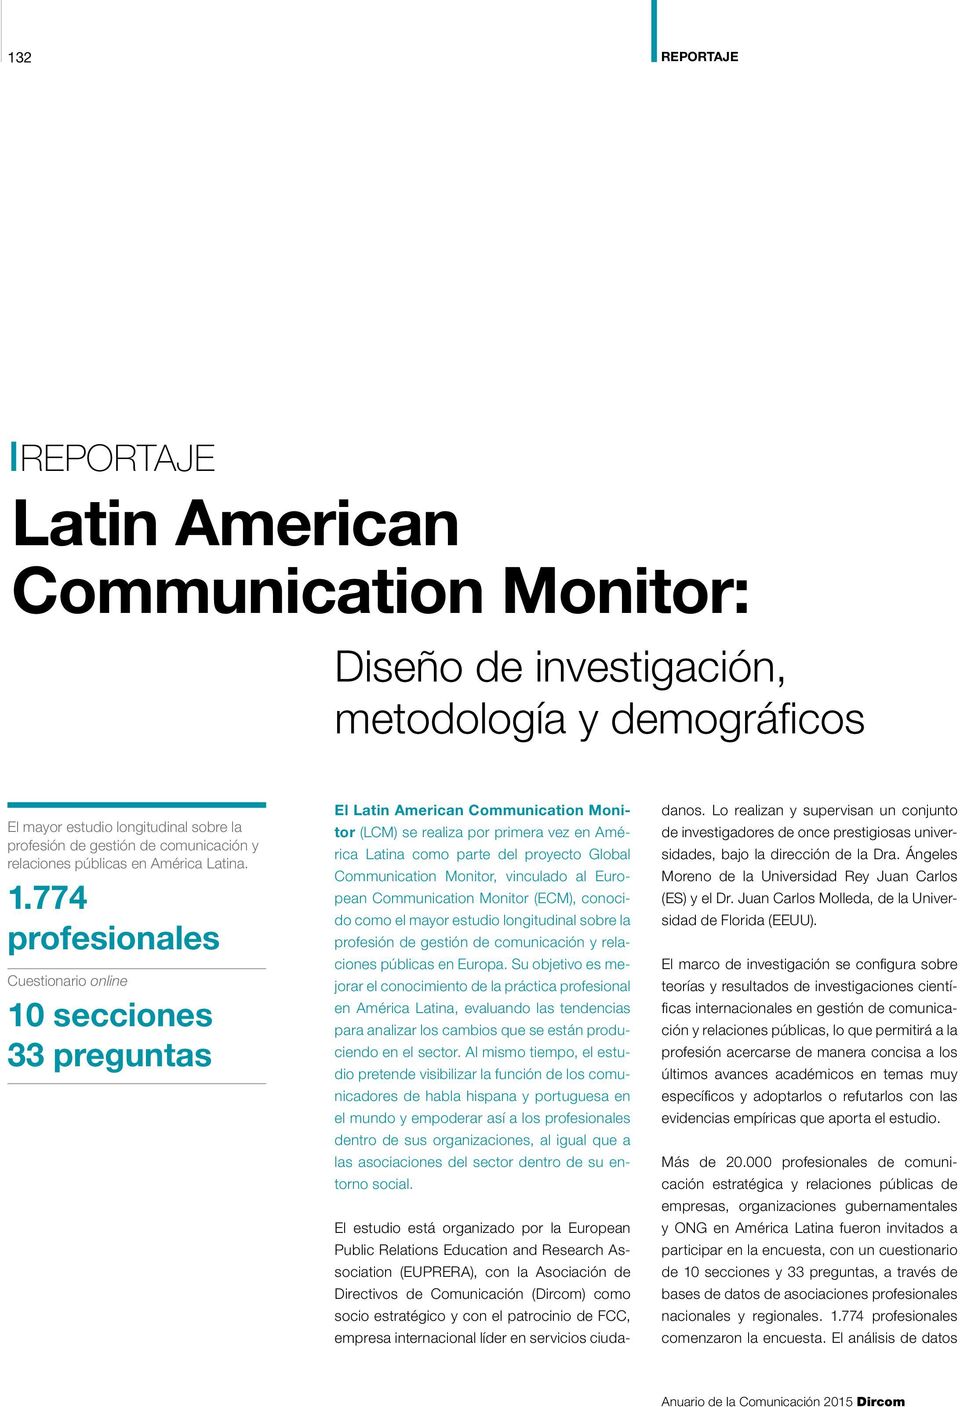 774 profesionales Cuestionario online 10 secciones 33 preguntas El Latin American Communication Monitor (LCM) se realiza por primera vez en América Latina como parte del proyecto Global Communication